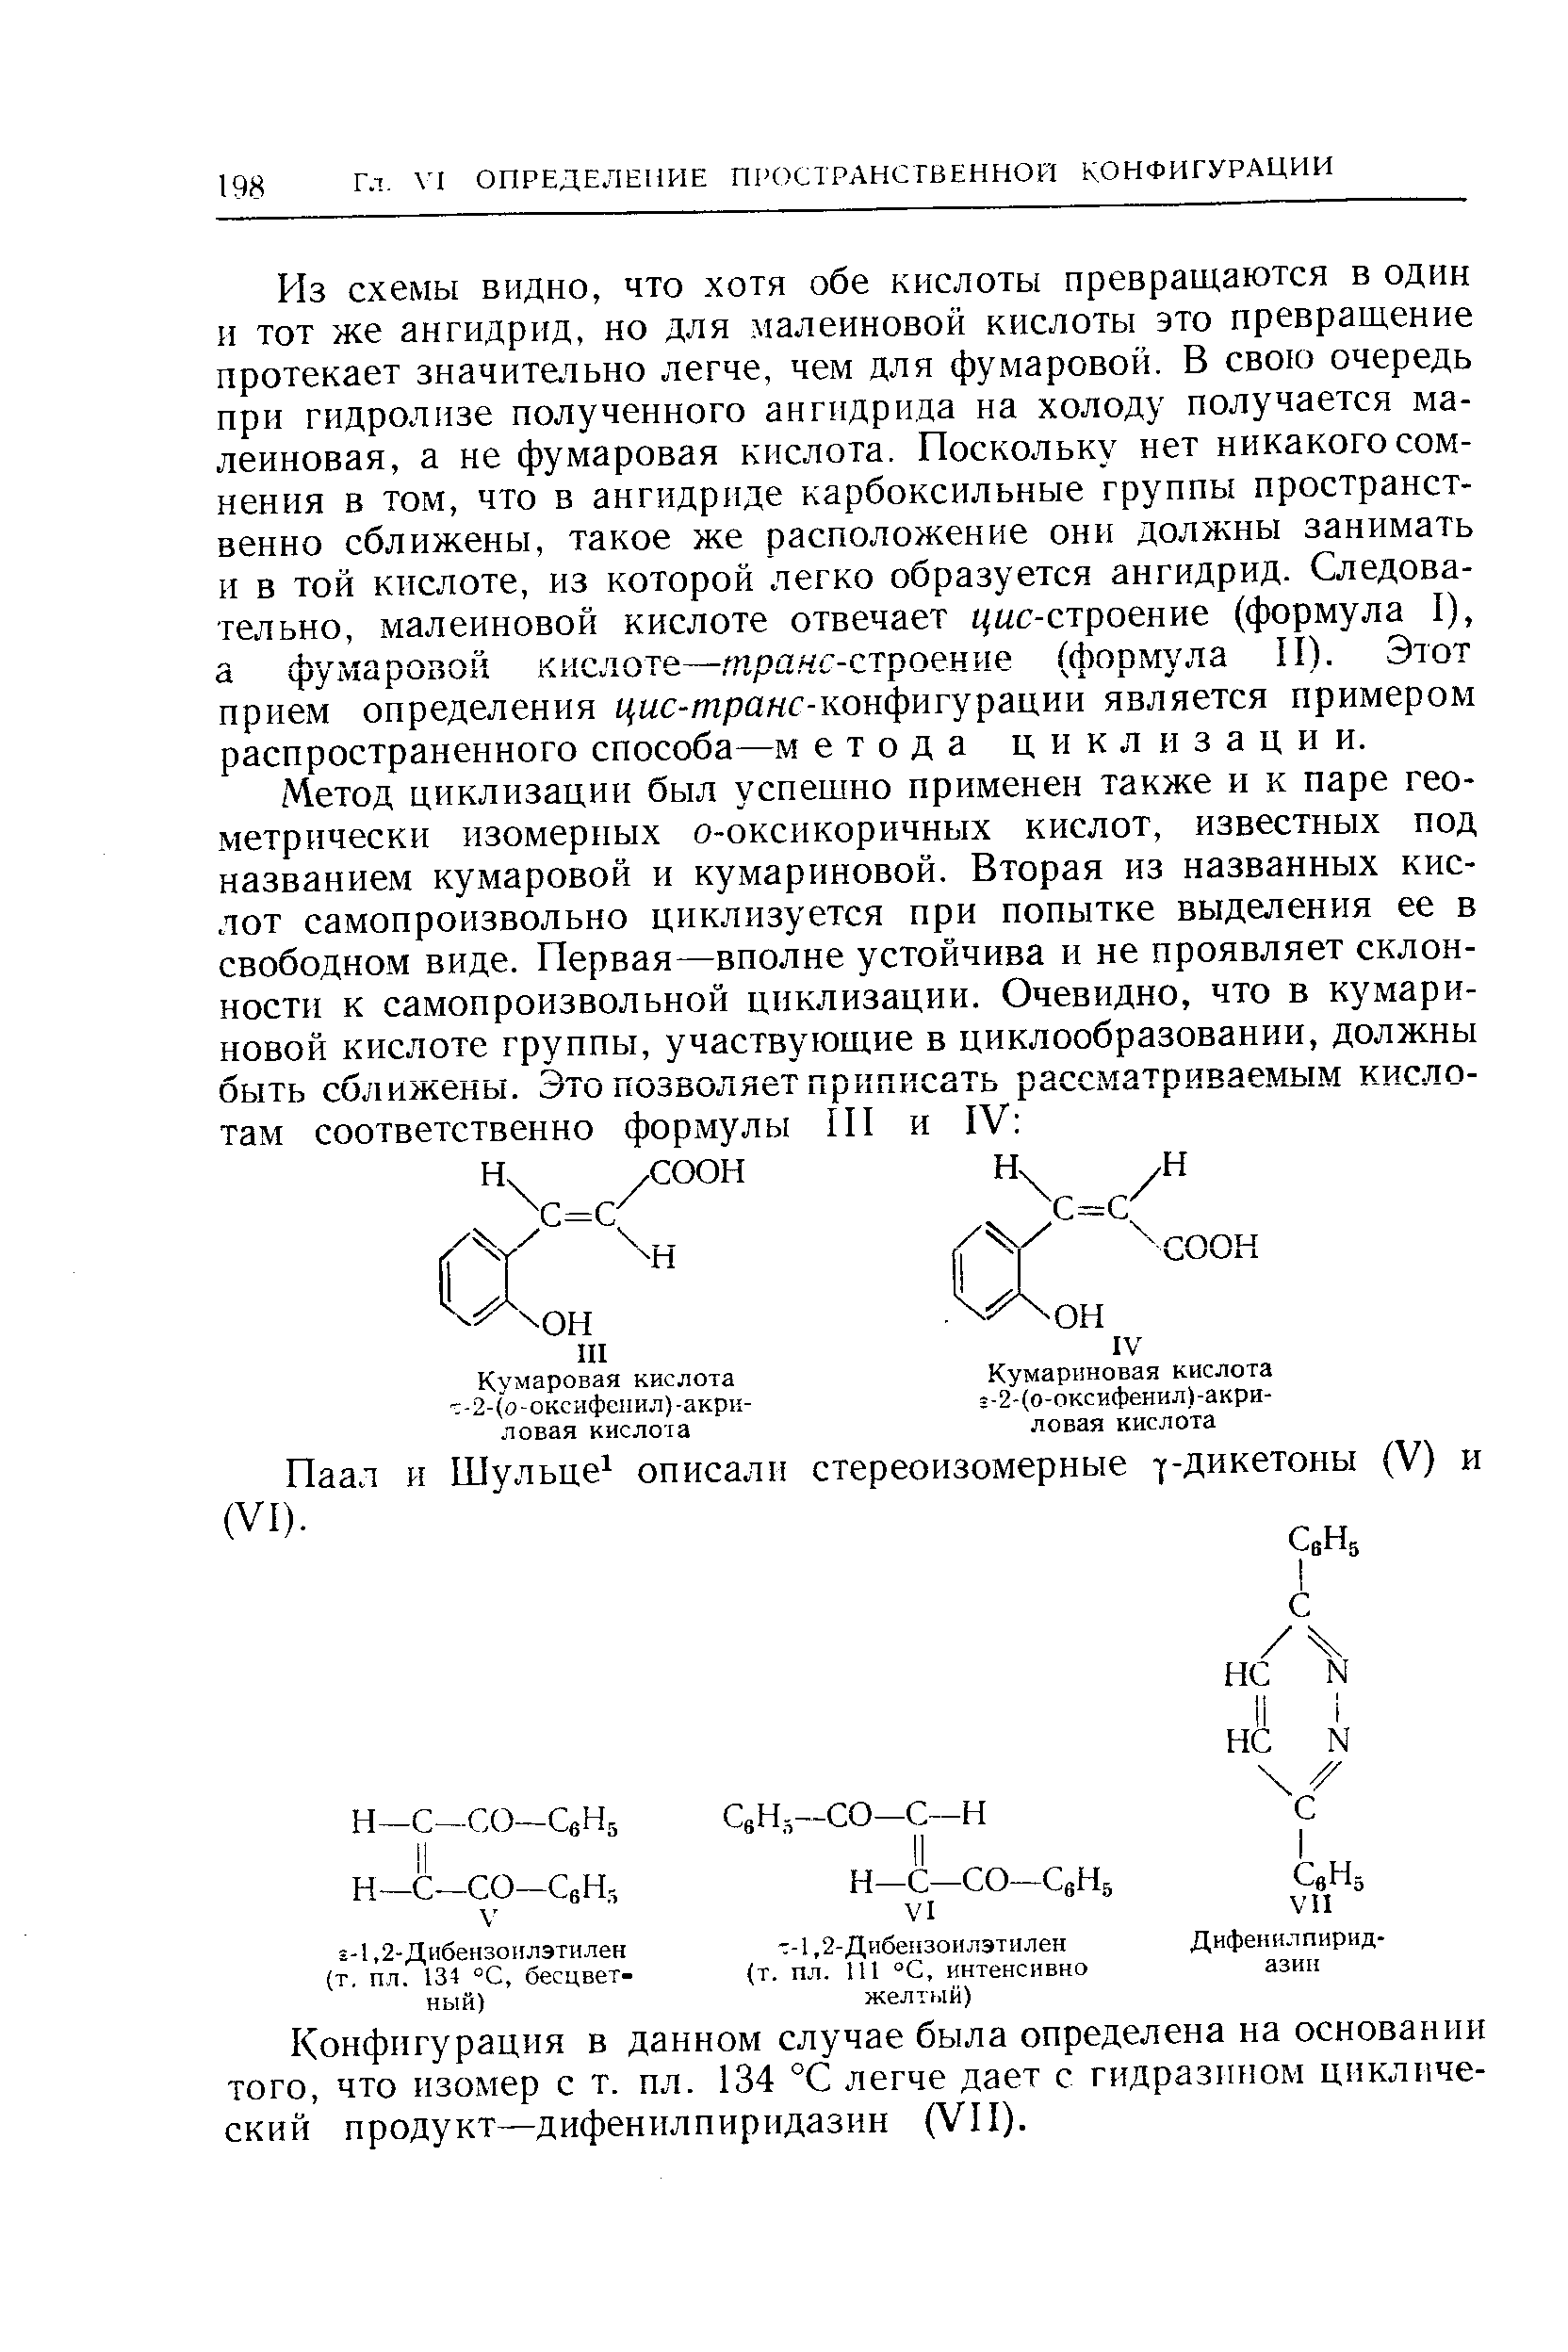 Конфигурация в данном случае была определена на основании того, что изомер с т. пл. 134 °С легче дает с гидразином циклический продукт—дифенилпиридазин (VII).